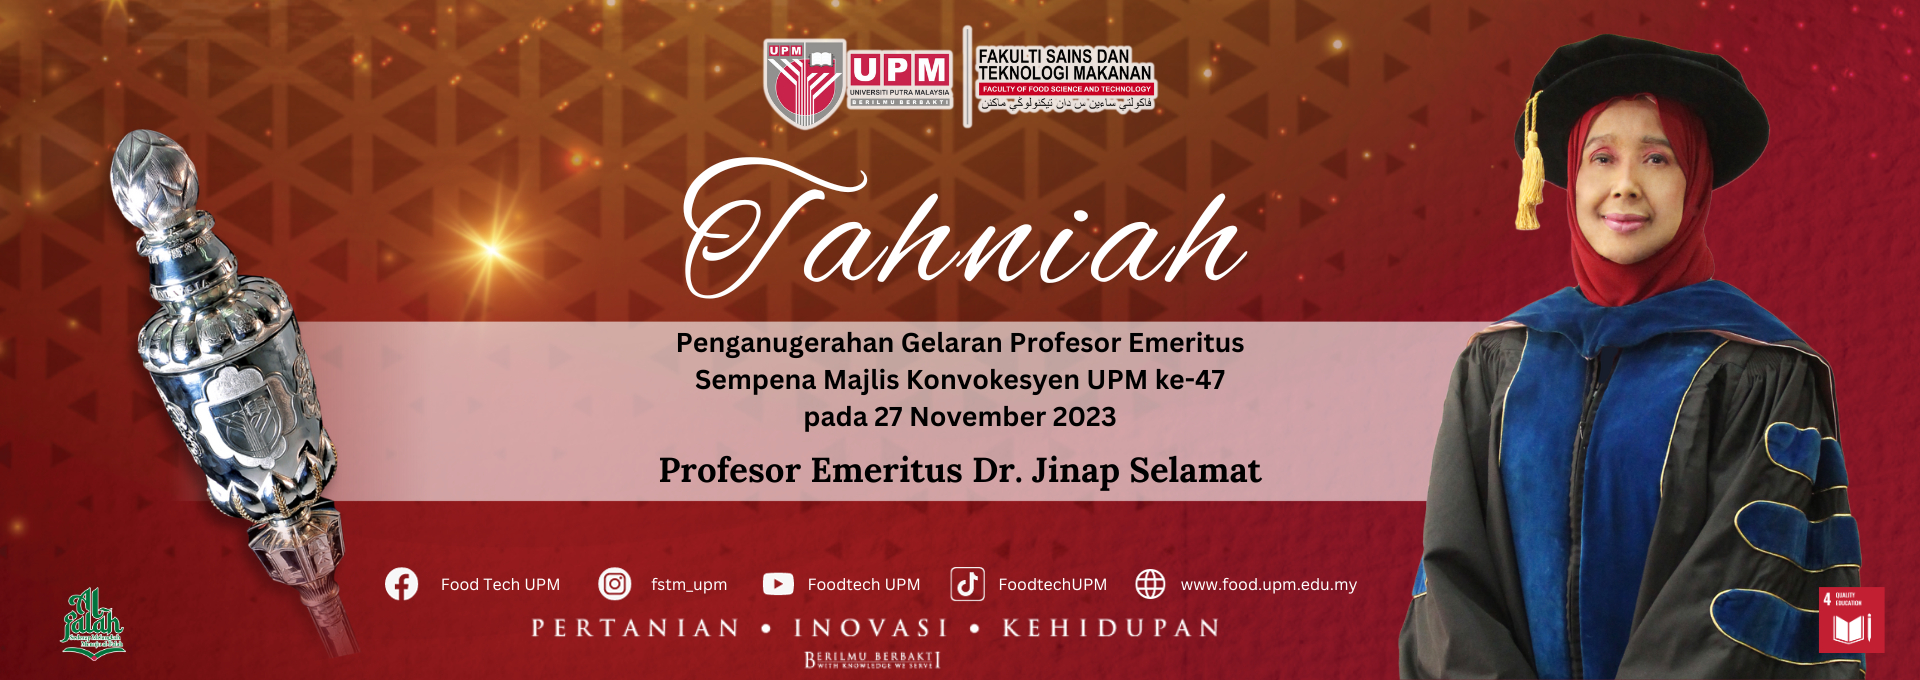 Profesor Emeritus Dr. Jinap Selamat